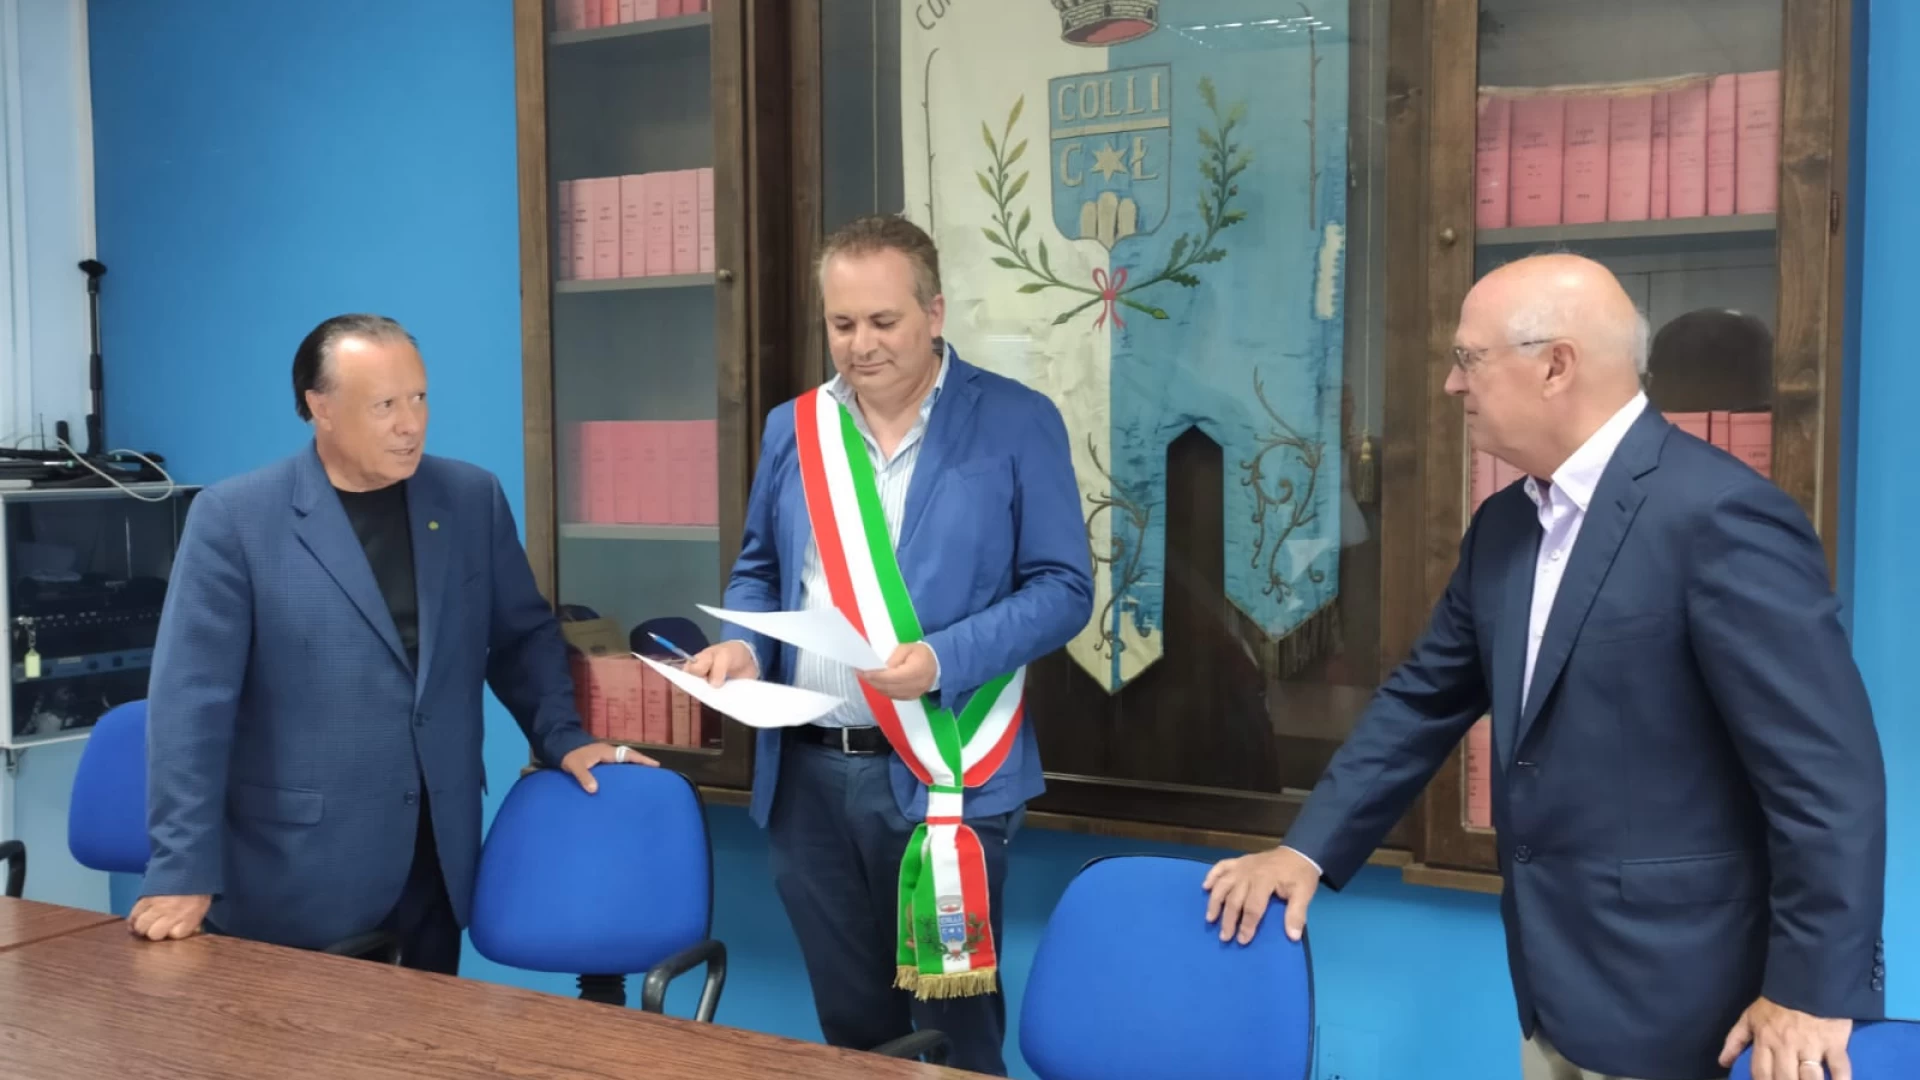 Colli a Volturno: il magnate americano Peter Carlino è ufficialmente cittadino italiano. Consegnata in comune la carta d’identità. Guarda il video